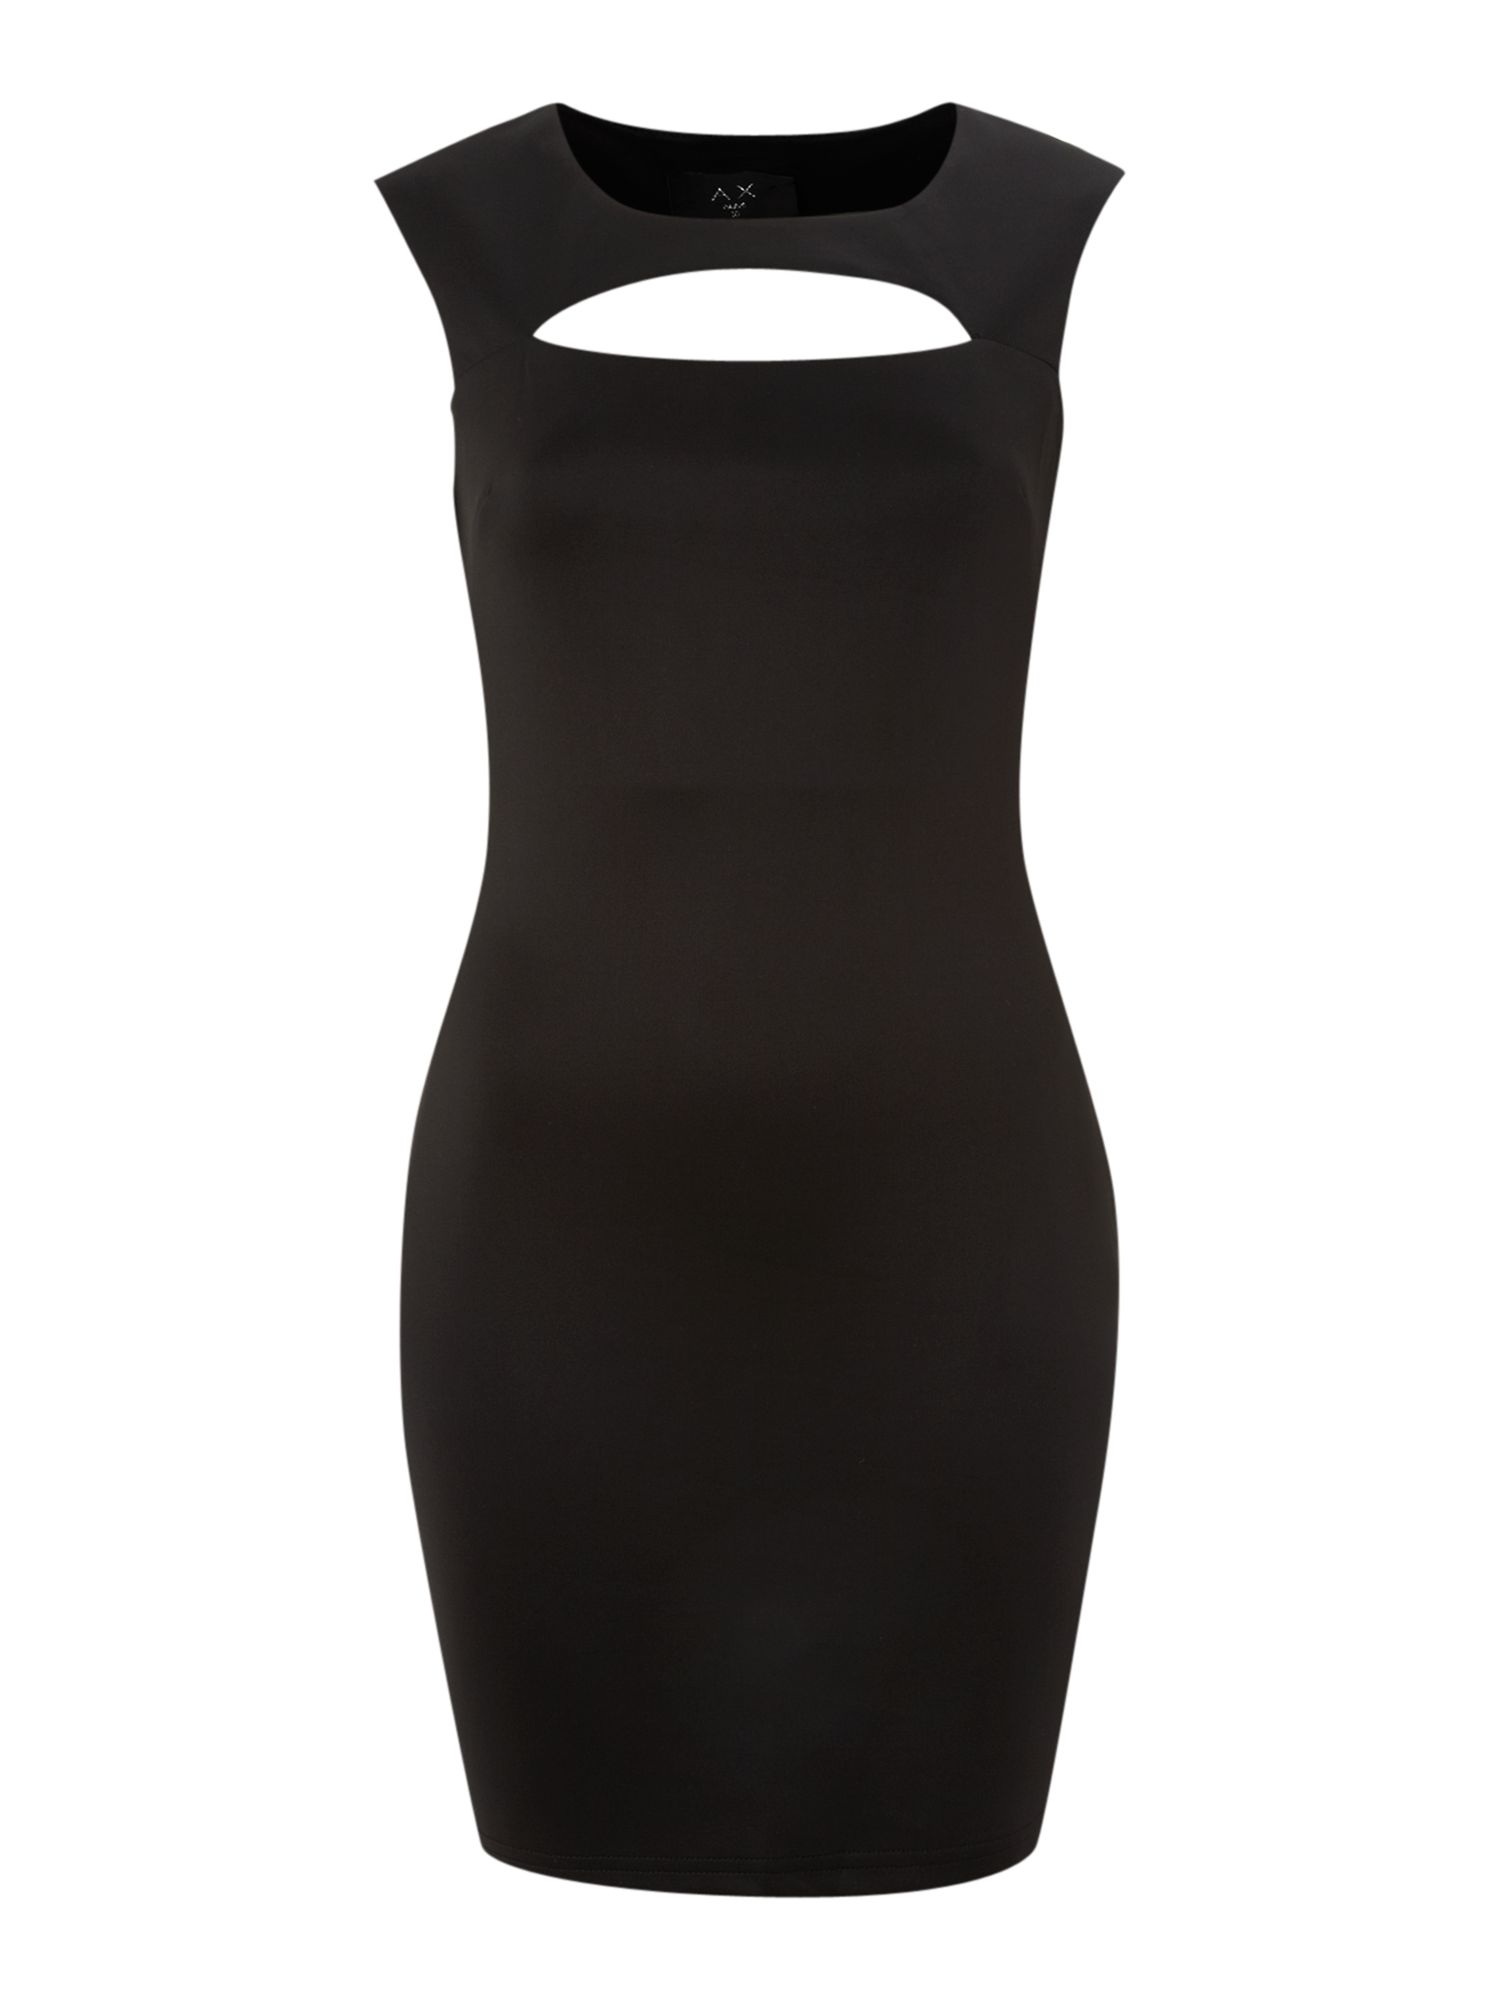 Ax Paris Cut Out Detail Bodycon Dress in Black | Lyst